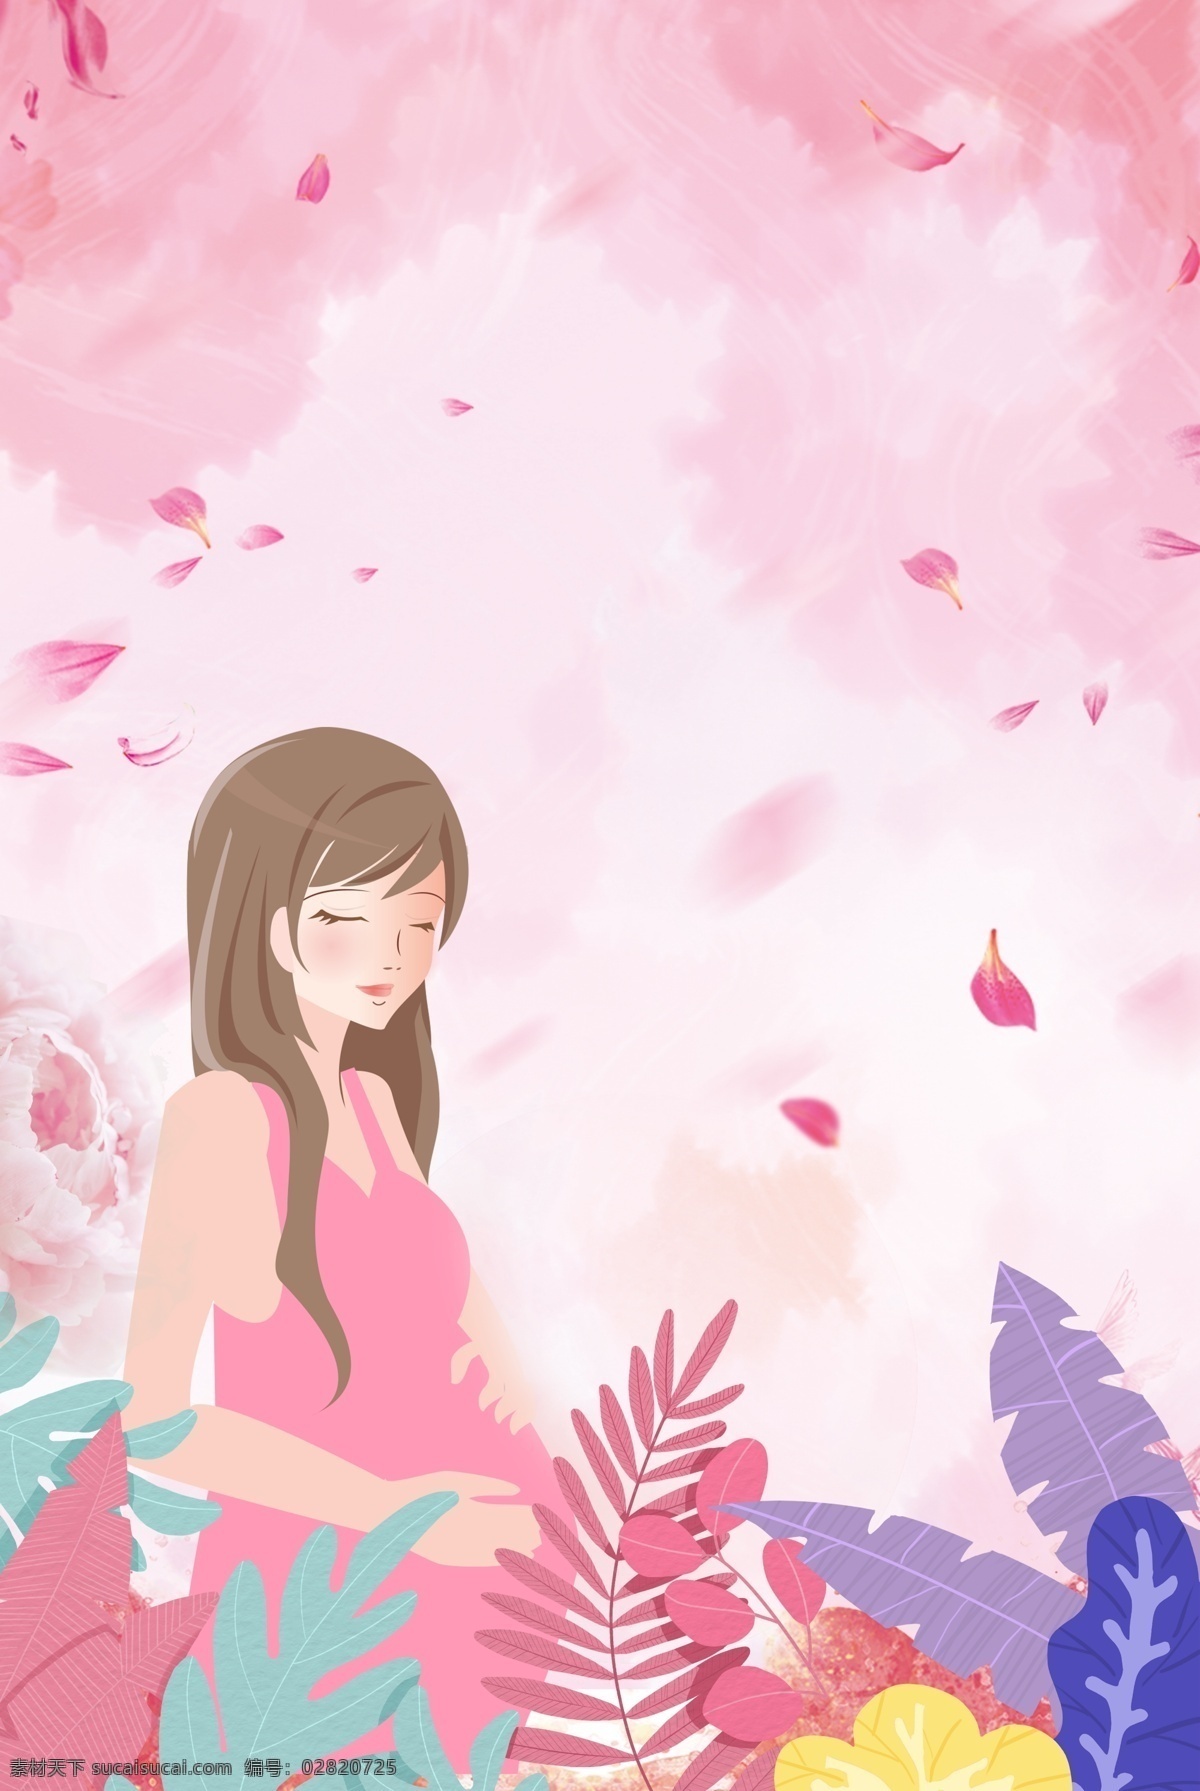 粉色 清新 温馨 母亲节 花卉 人物 背景 手绘 人物背景 康乃馨 花朵 花瓣 浪漫 孕妇